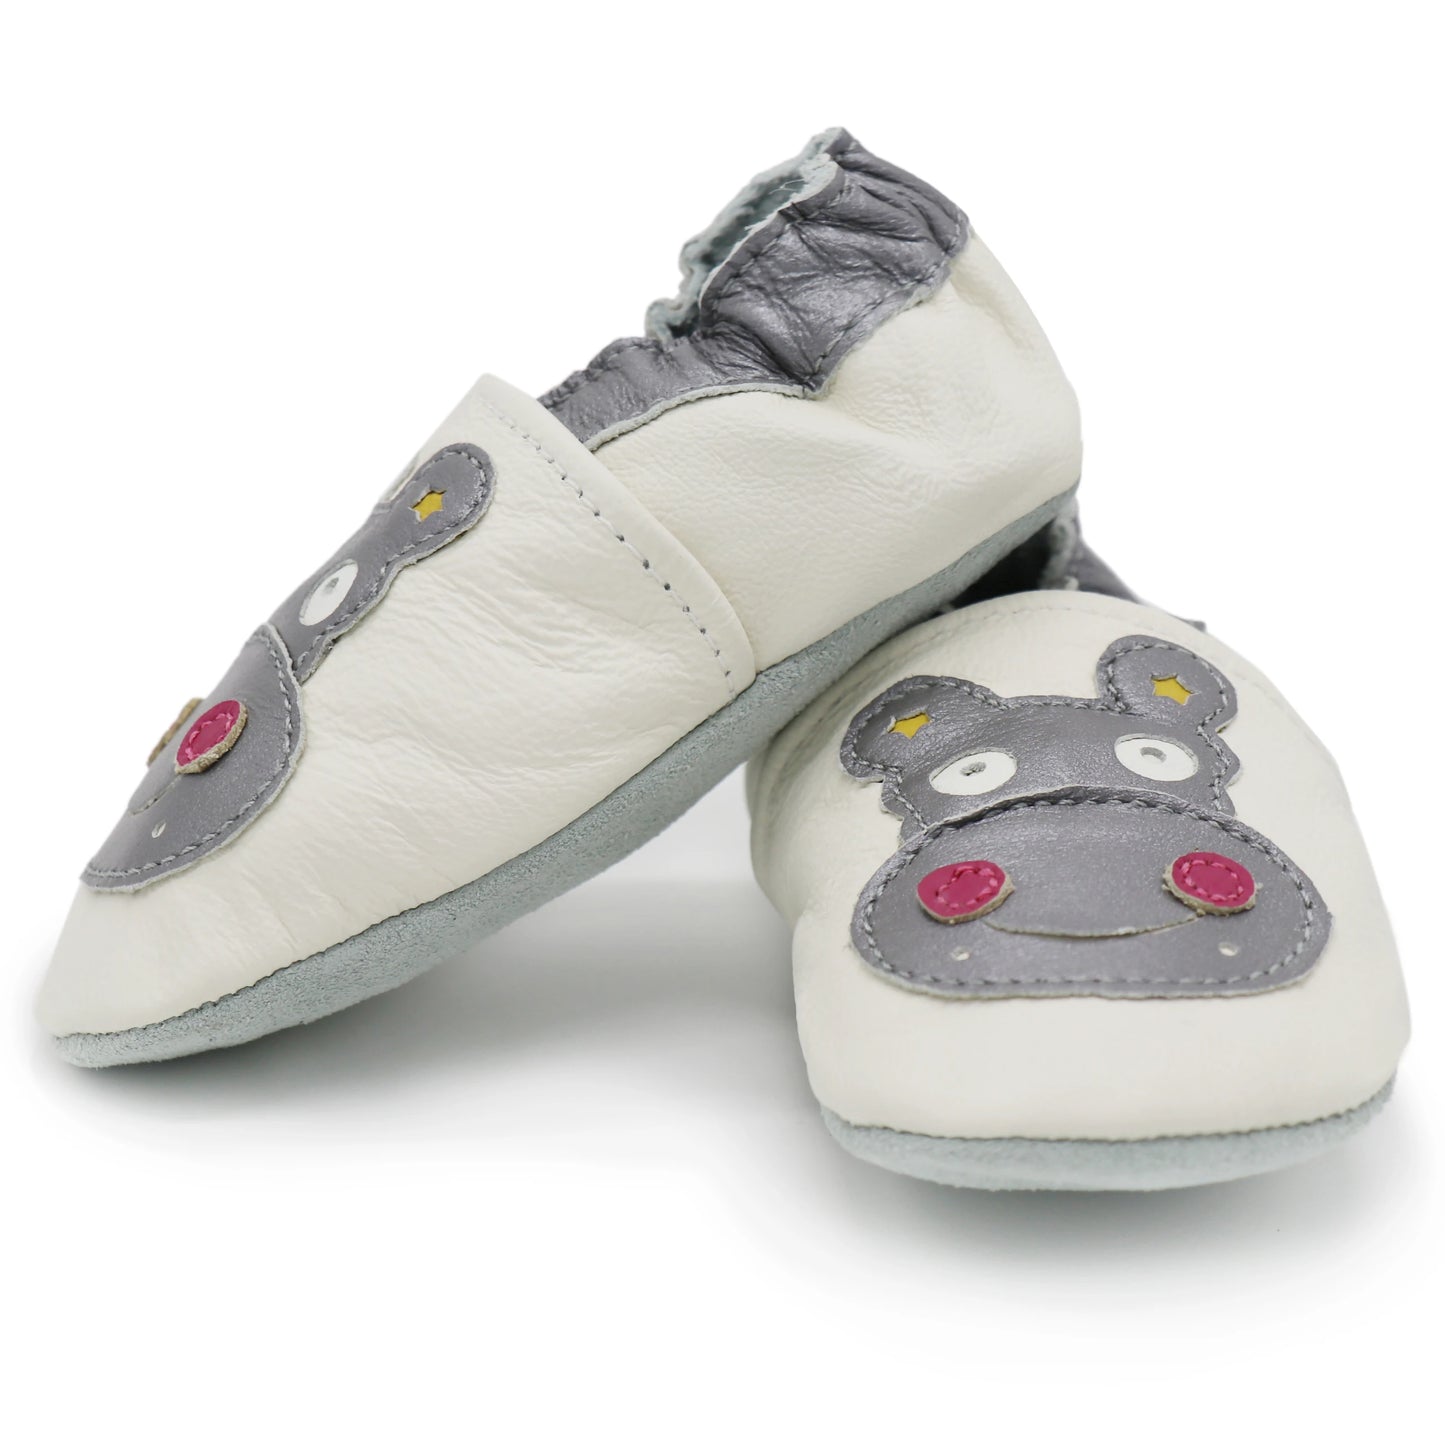 BABY HOUSE - Carozoo Bébé Chaussures En Cuir Enfants Pantoufles Bébé Fille Chaussures Nouveau-né Babi Garçon Prewalker Première Marche Chaussures Pour Bébé